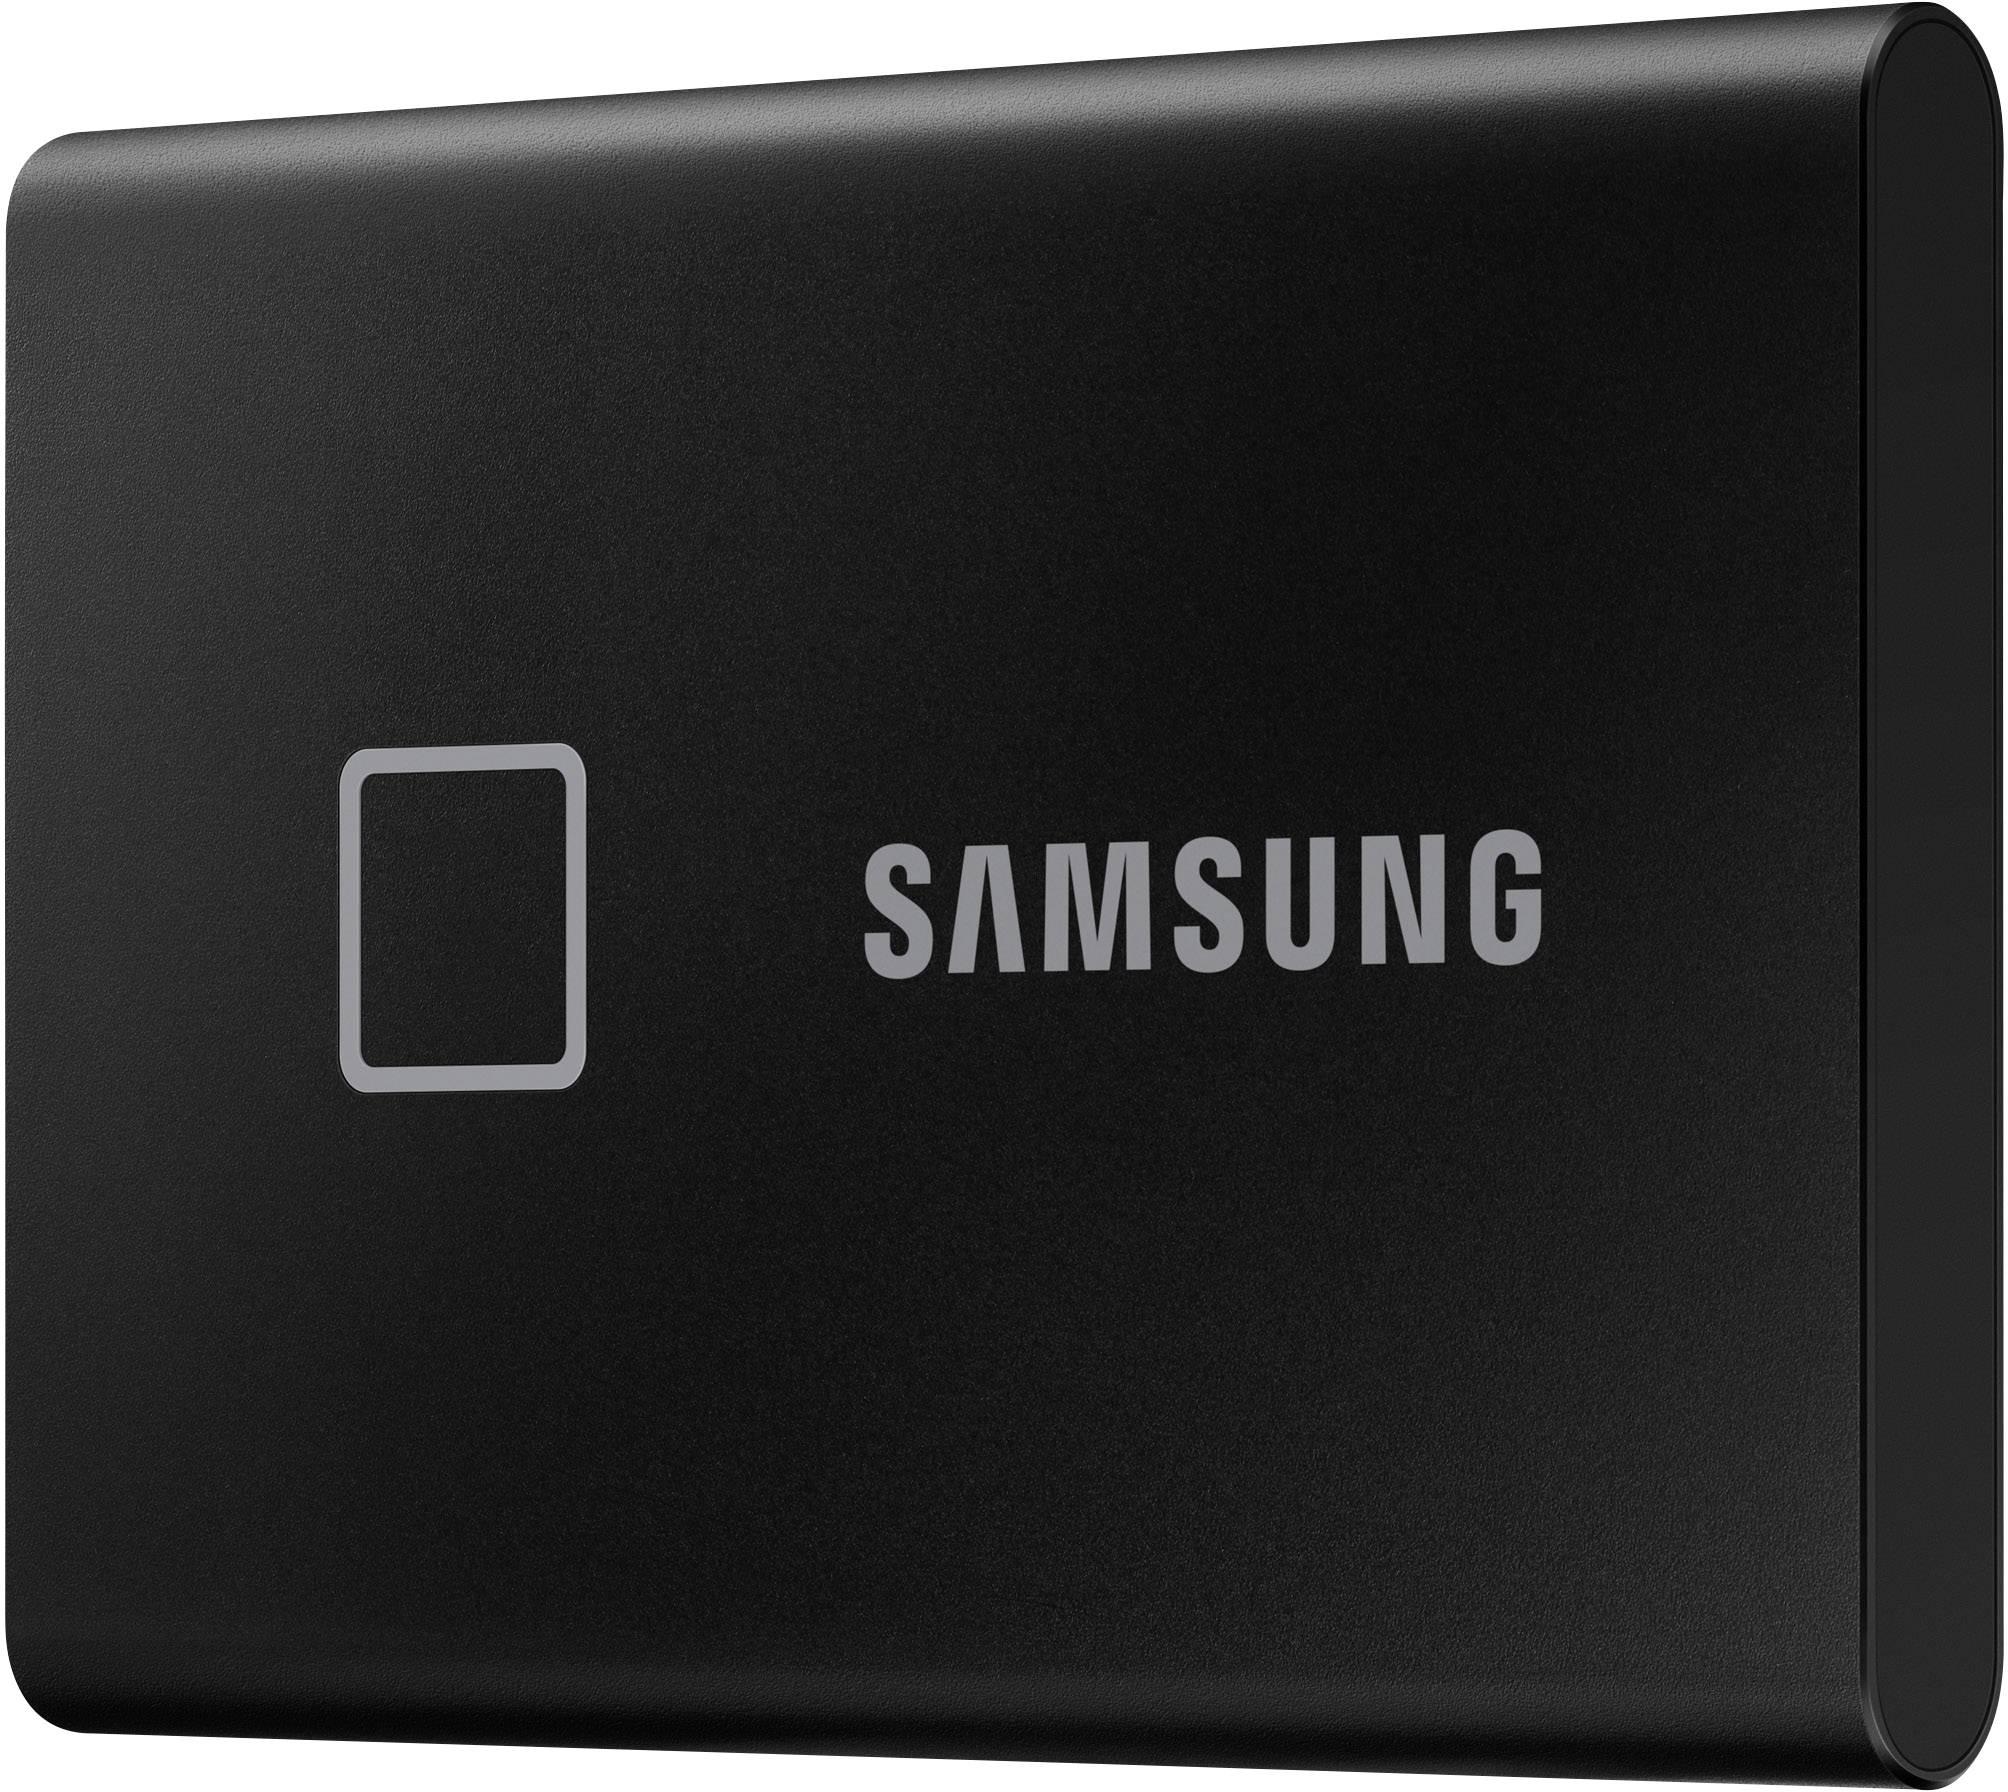 Samsung Portable T Touch Tb External Ssd Hard Drive Usb Gen Black Mu Pc T K Ww